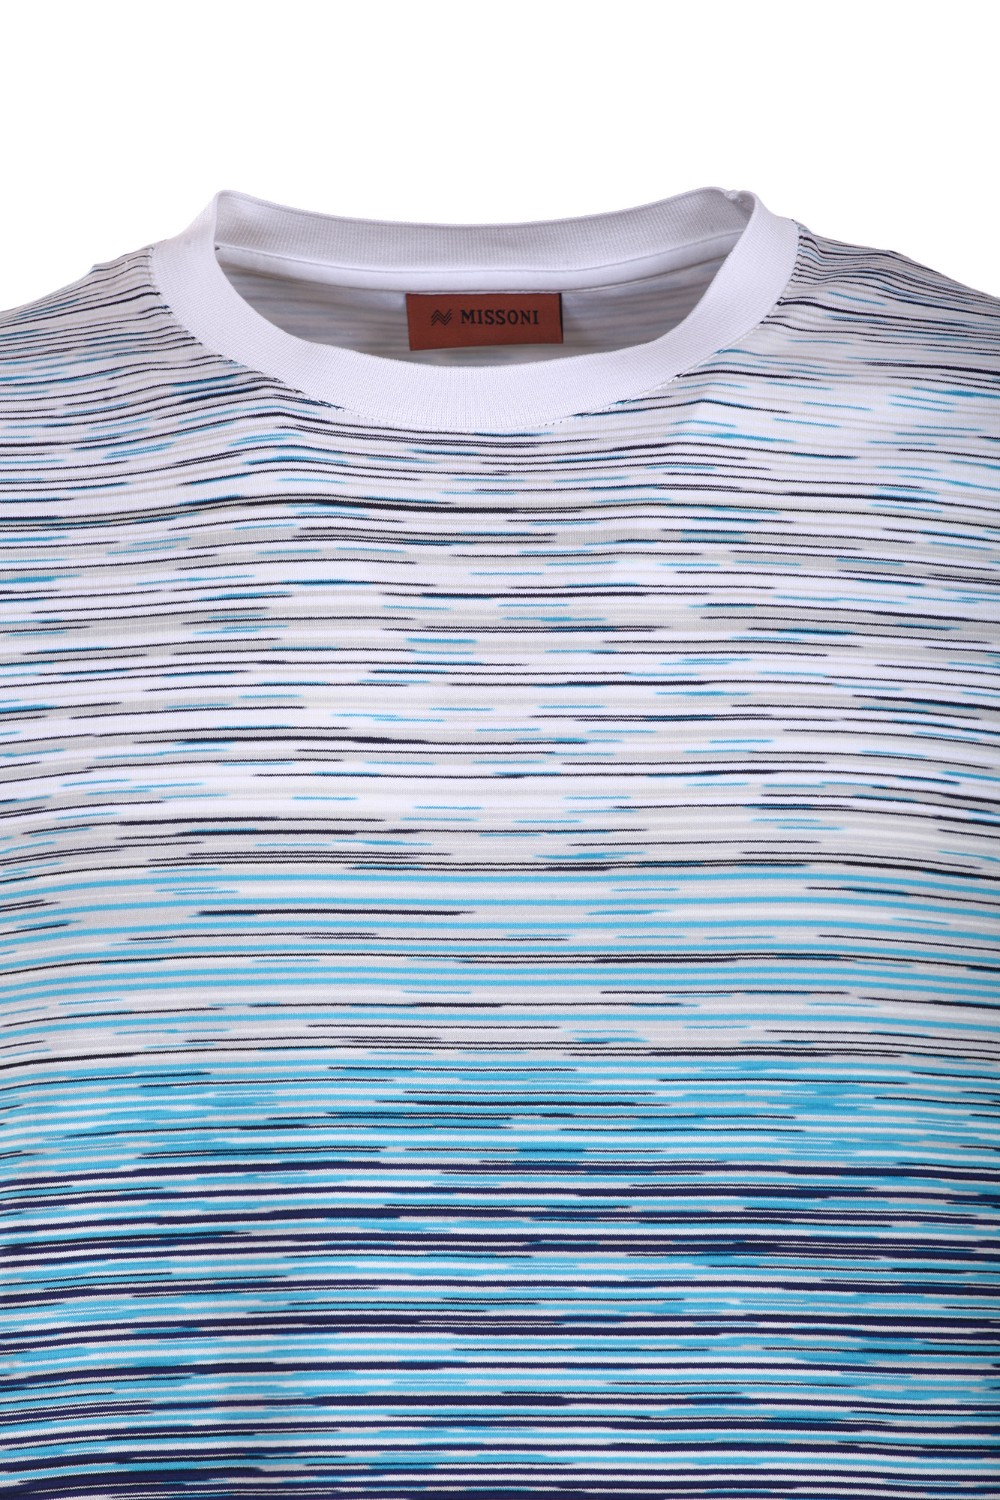 shop MISSONI Saldi T-shirt: Missoni t-shirt girocollo con maniche corte multicolore.
Composizione: 100% Cotone.
Fabbricato in Romania.. US23SL0J-F705K number 2404253